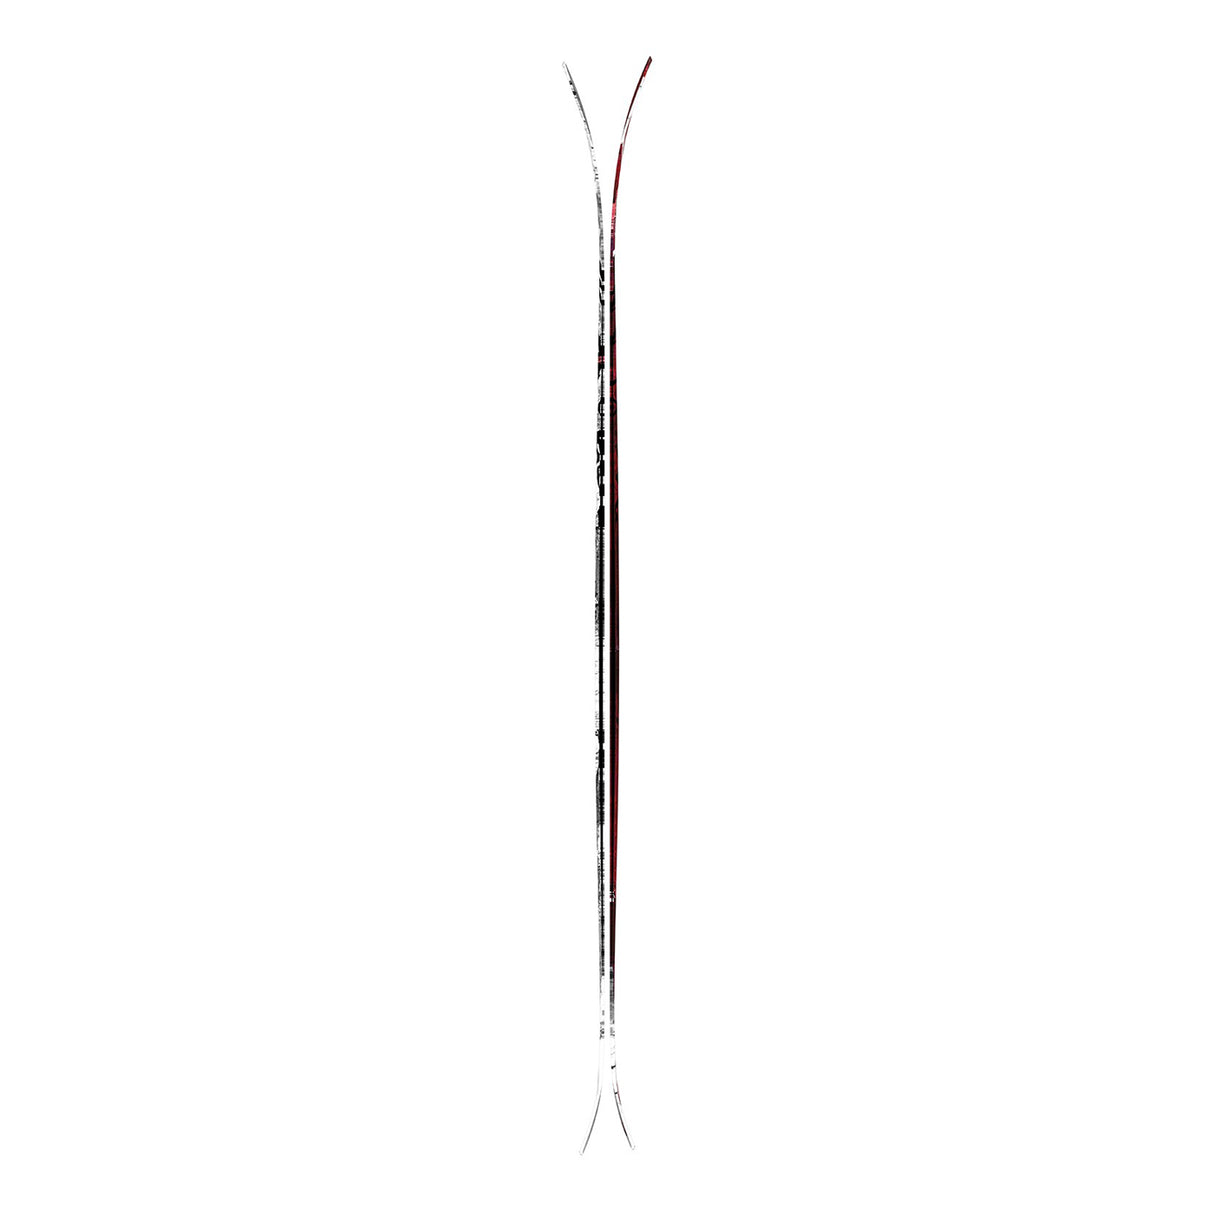 Atomic Bent 90 Skis | 2024